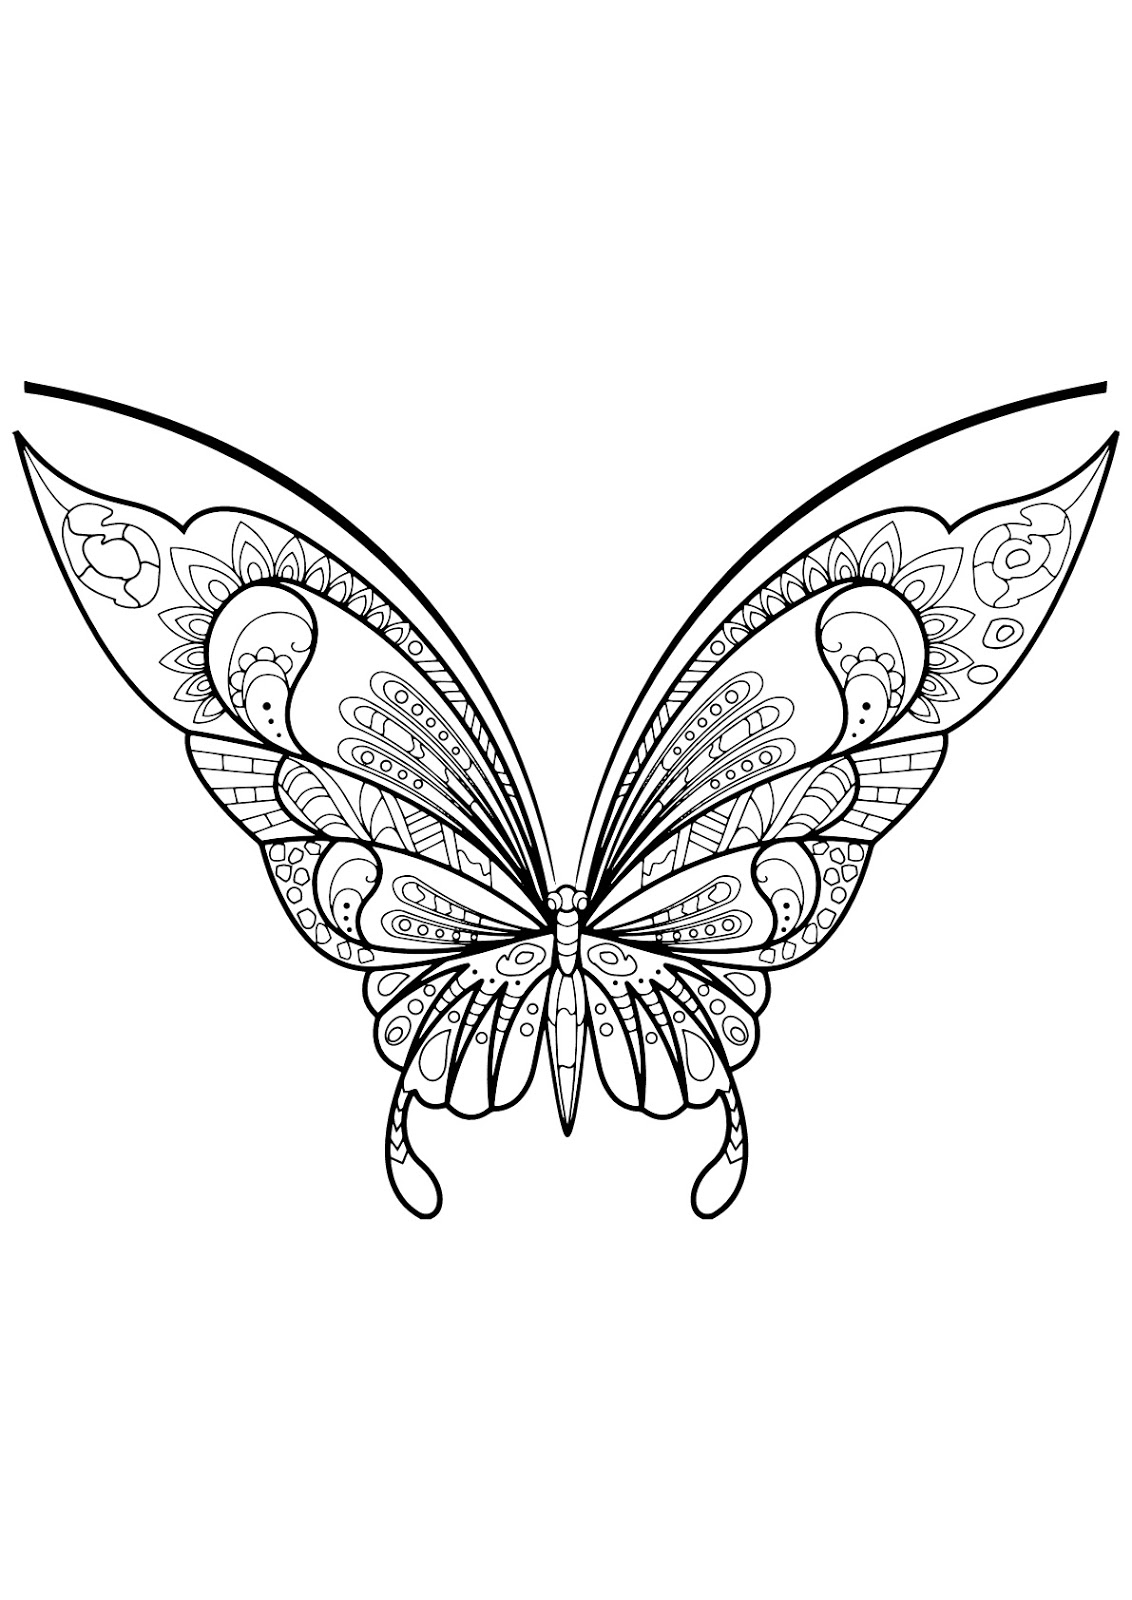 Tranh tô màu con bướm cánh trên to hơn cánh dưới